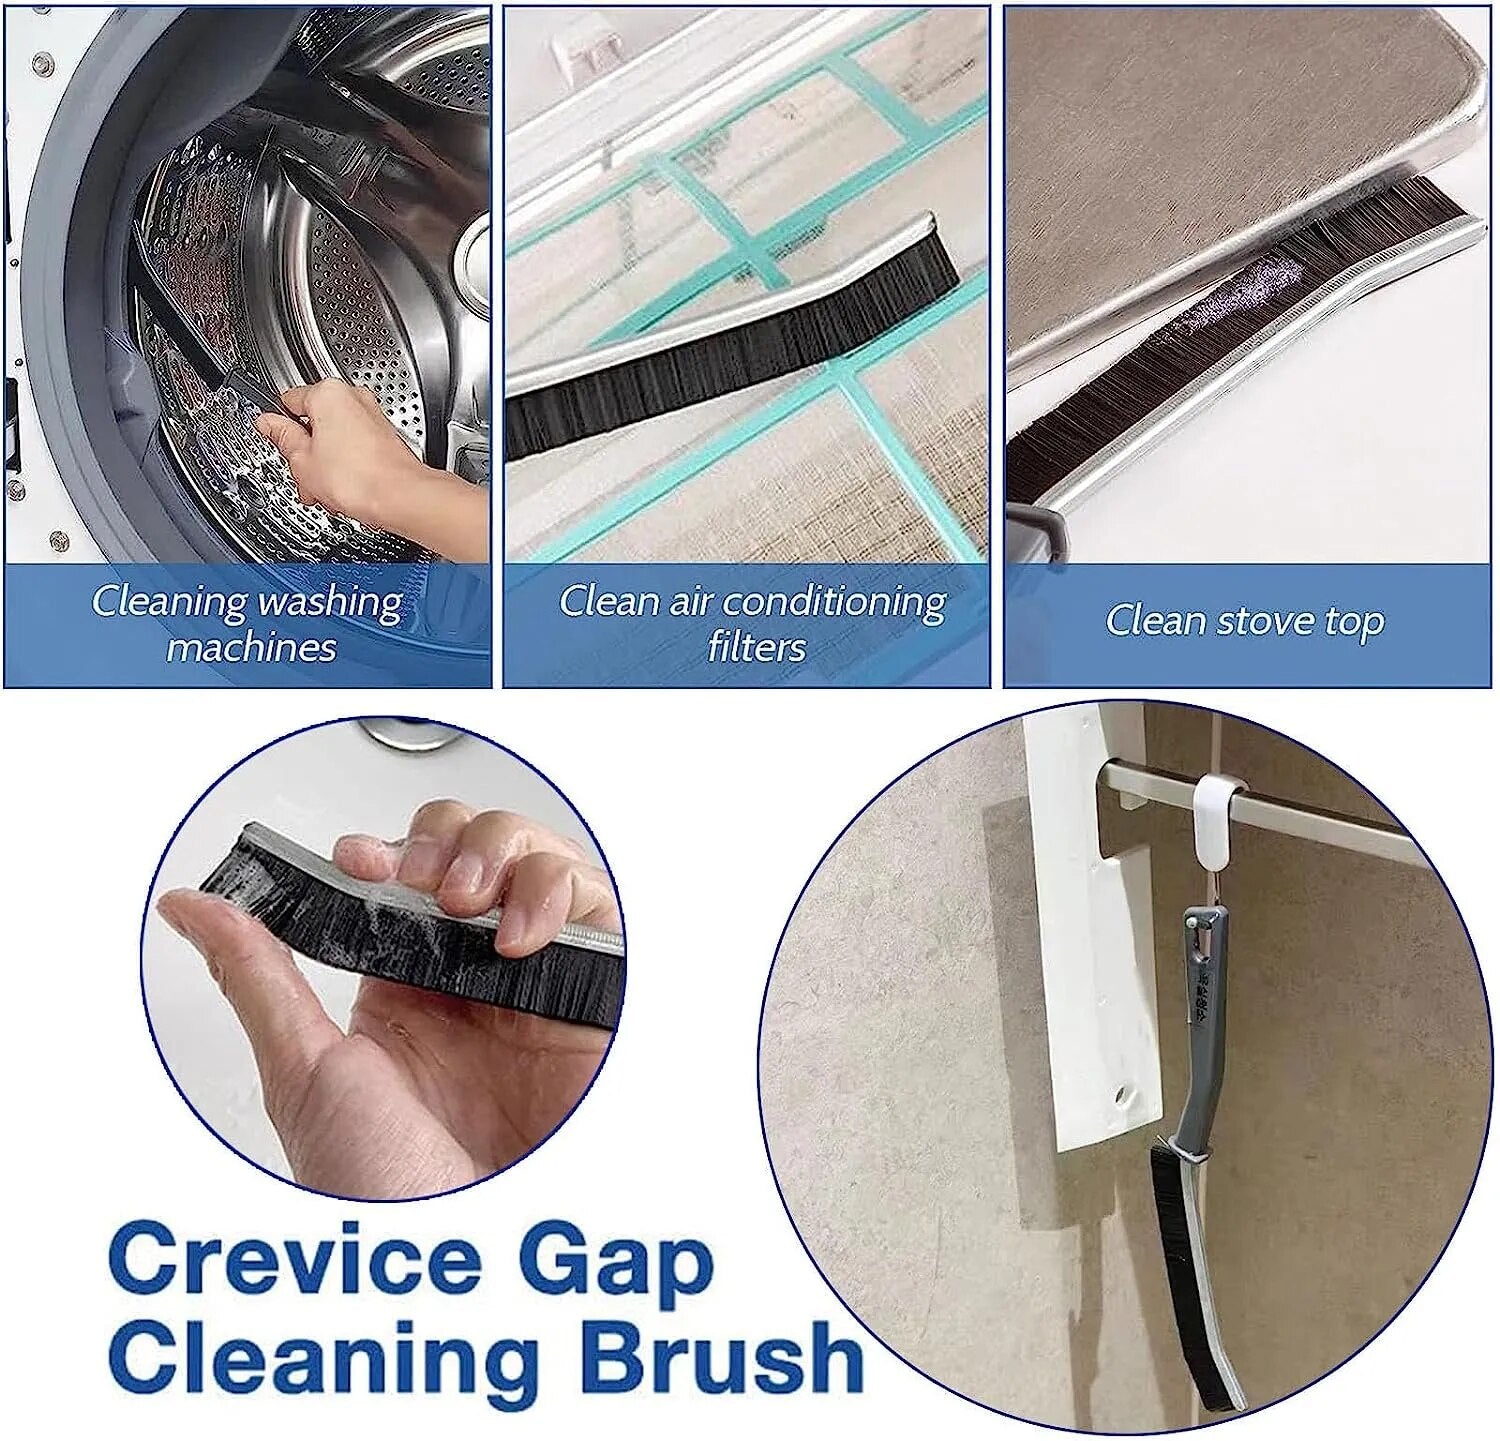 Gap Cleaning Brush (Buy 1 Get 1 Free)